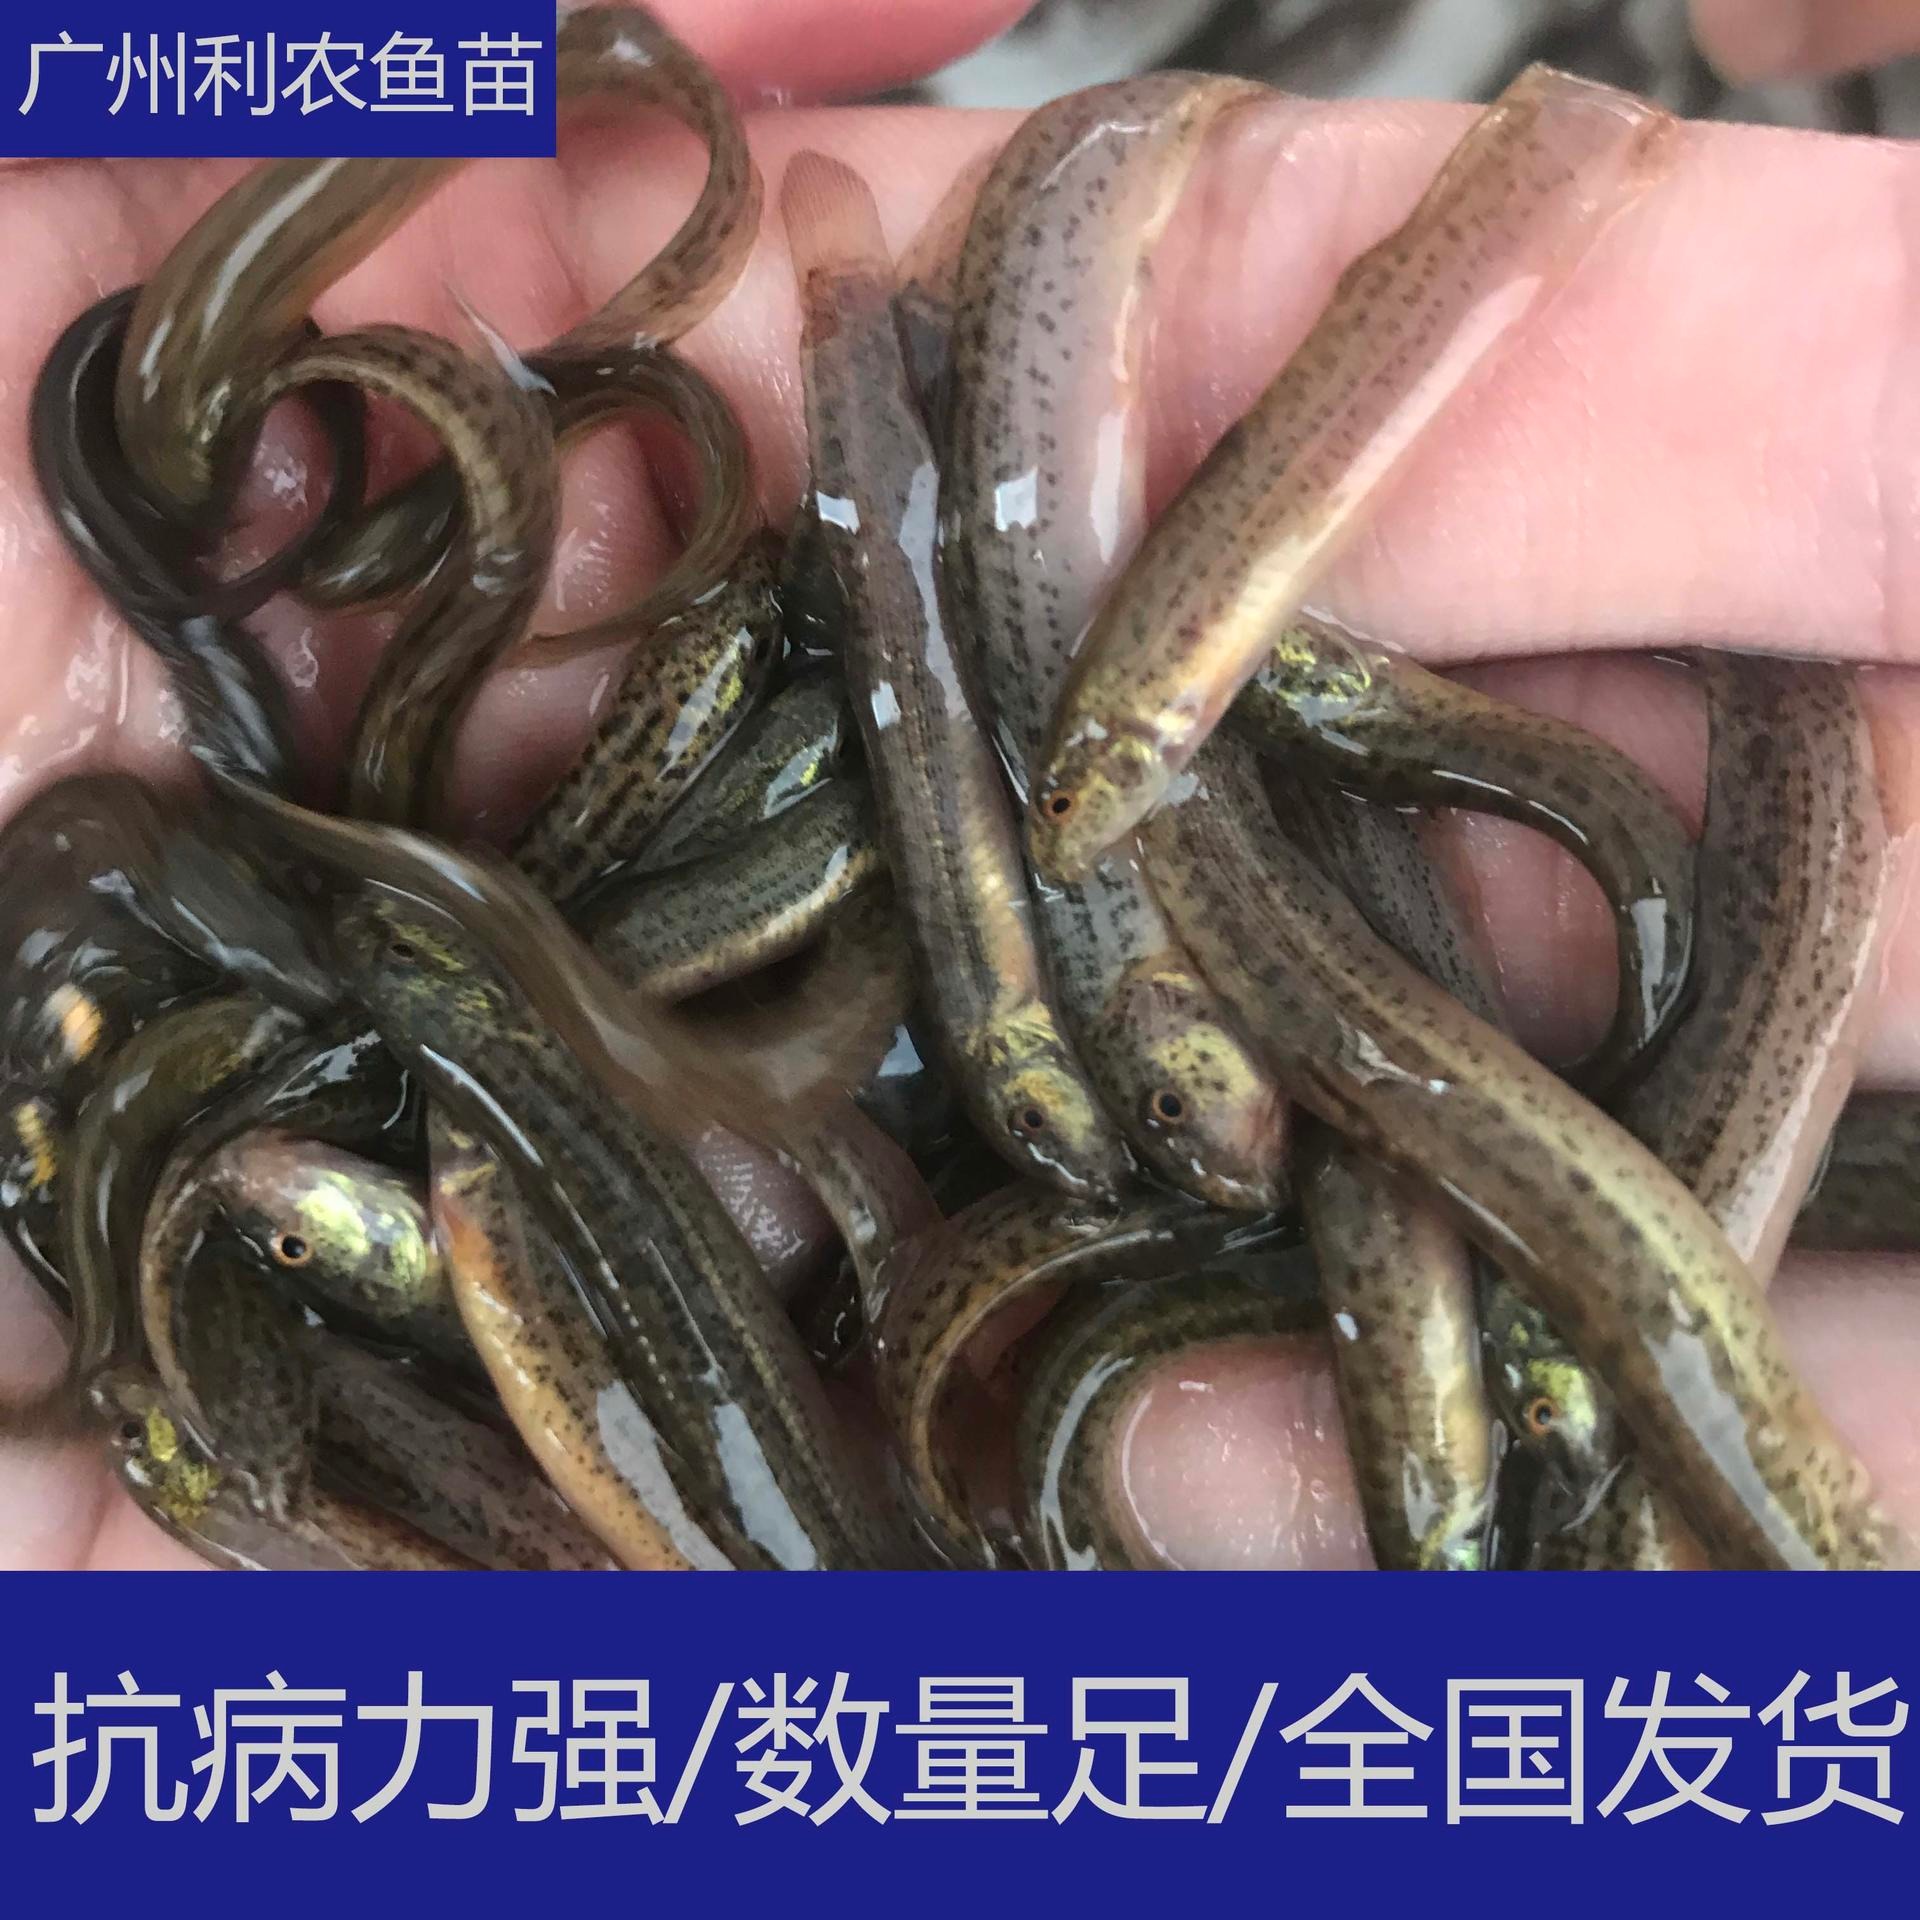 大量批发 广东梅州纯种台湾大泥鳅苗 3-5cm台湾大泥鳅苗行情好